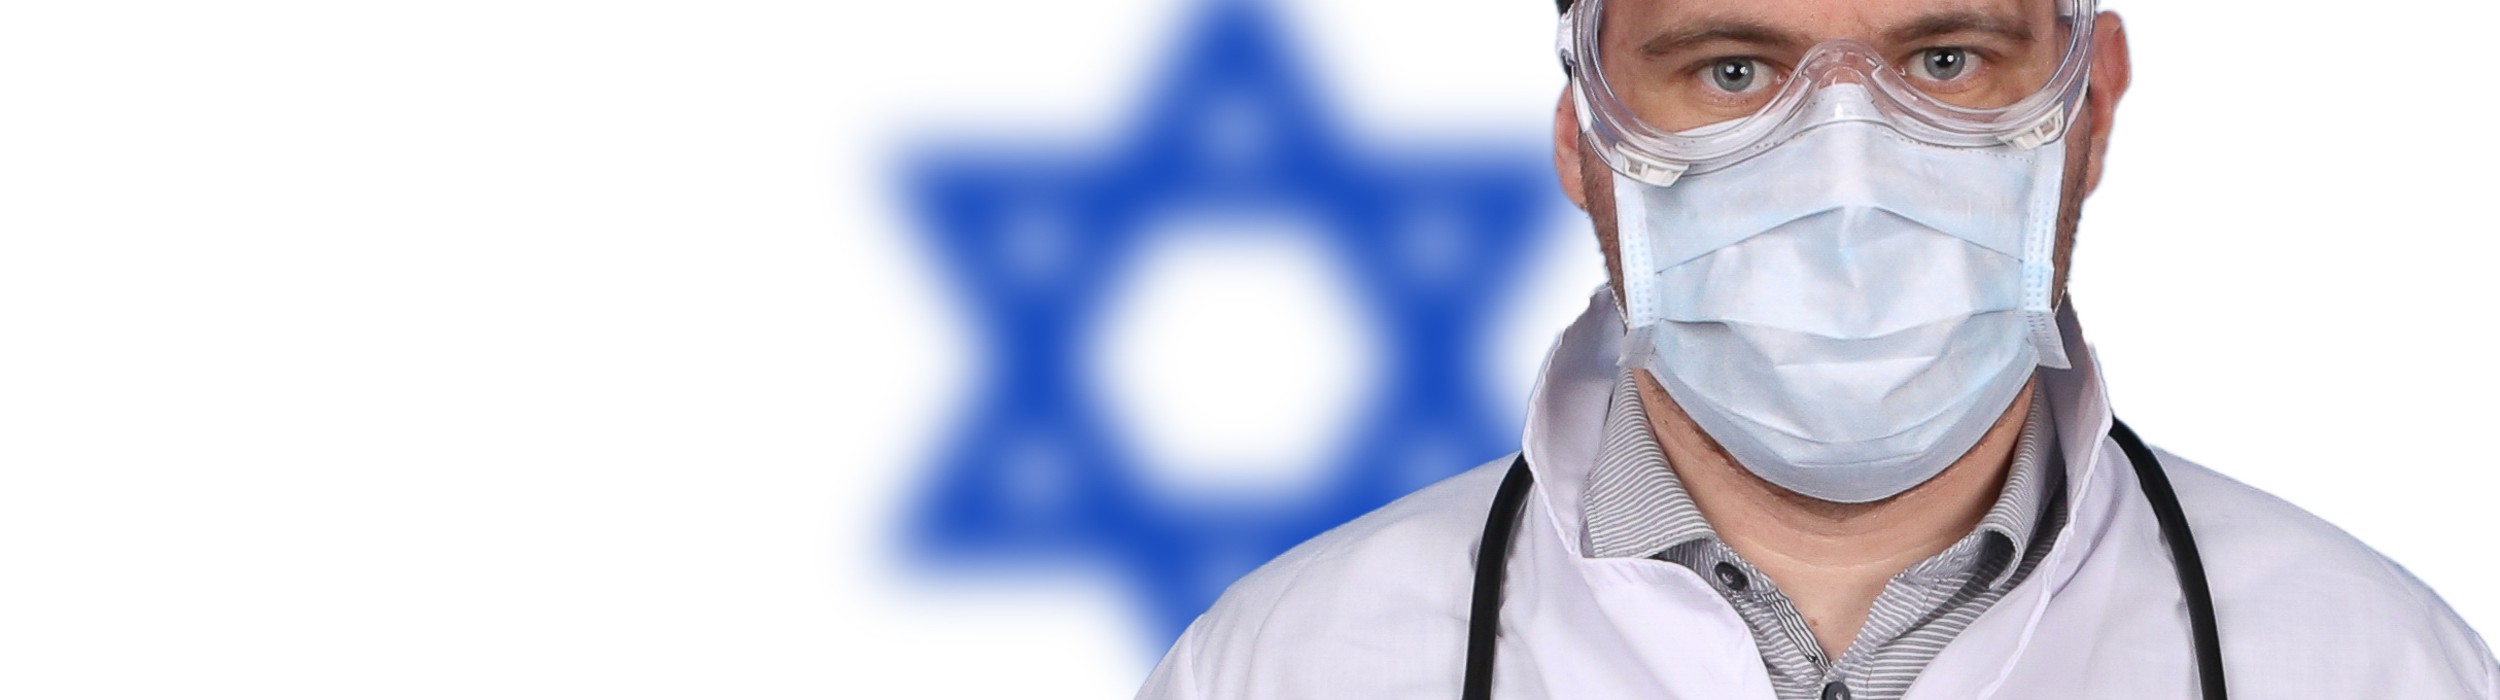 Unglaubliche Enthüllungen aus Israel: NULL COVID-TODESFÄLLE bei Menschen unter 50